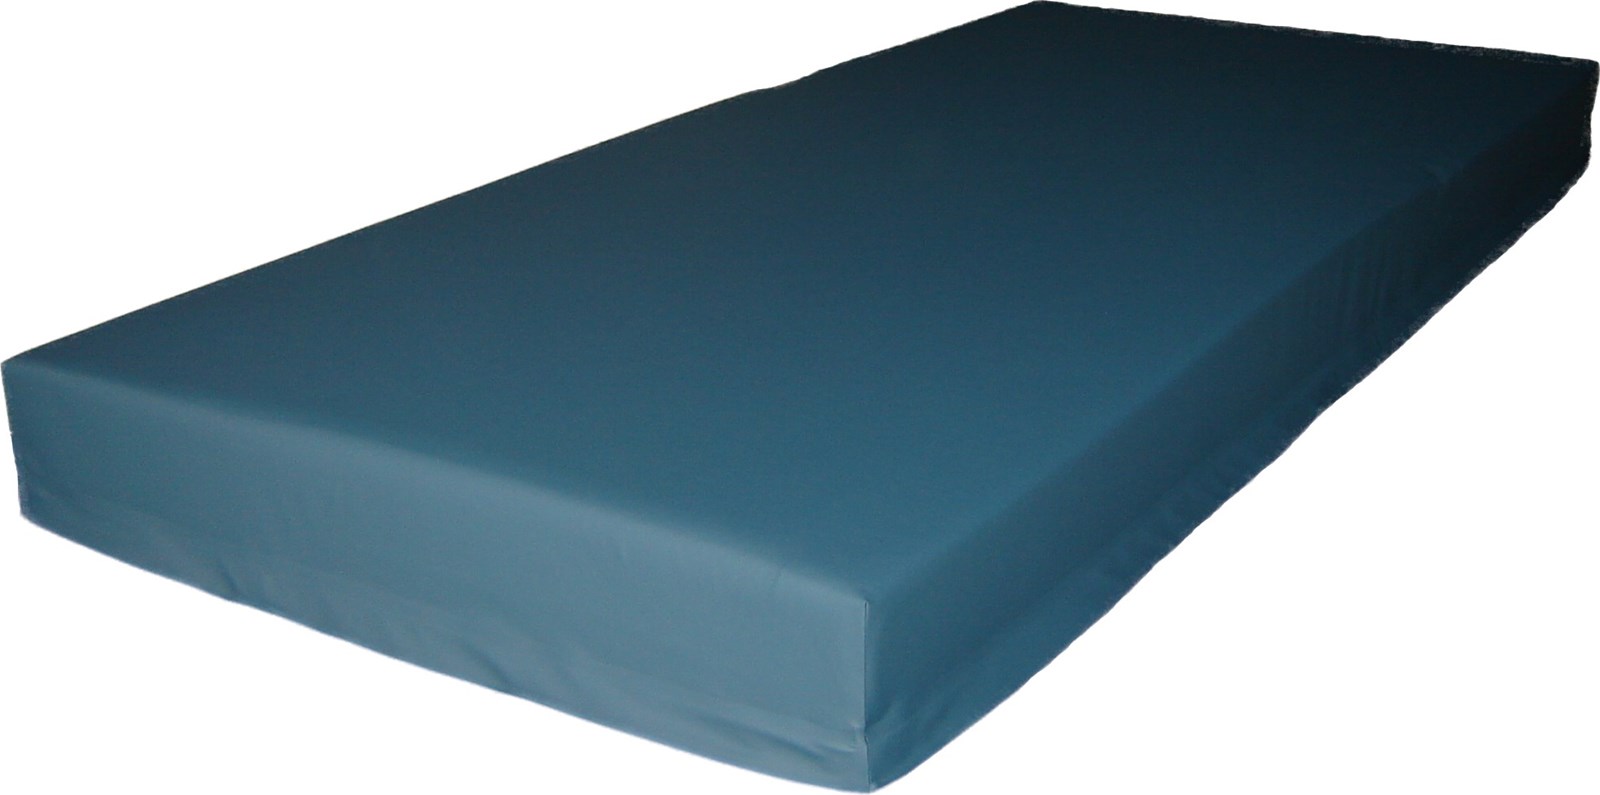 6 gauge vinyl mattress cover